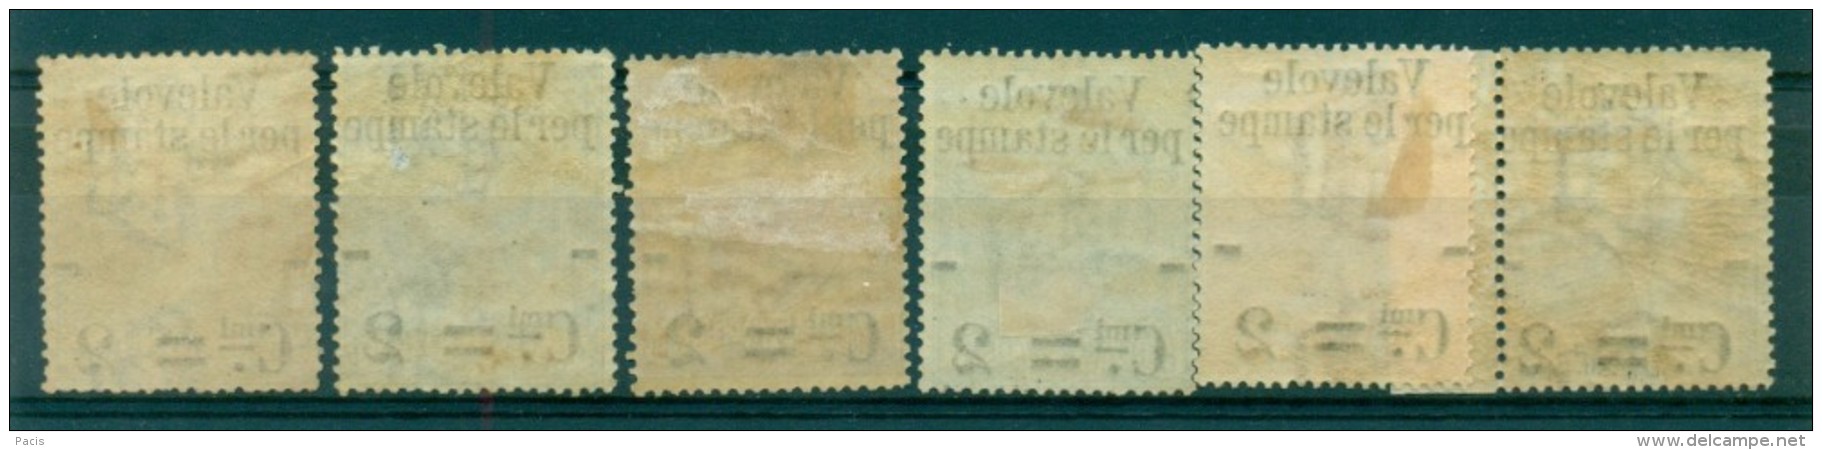 REGNO 1890 VALEVOLE PER LE STAMPE GOMMA ORIGINALE MH* - Colis-postaux